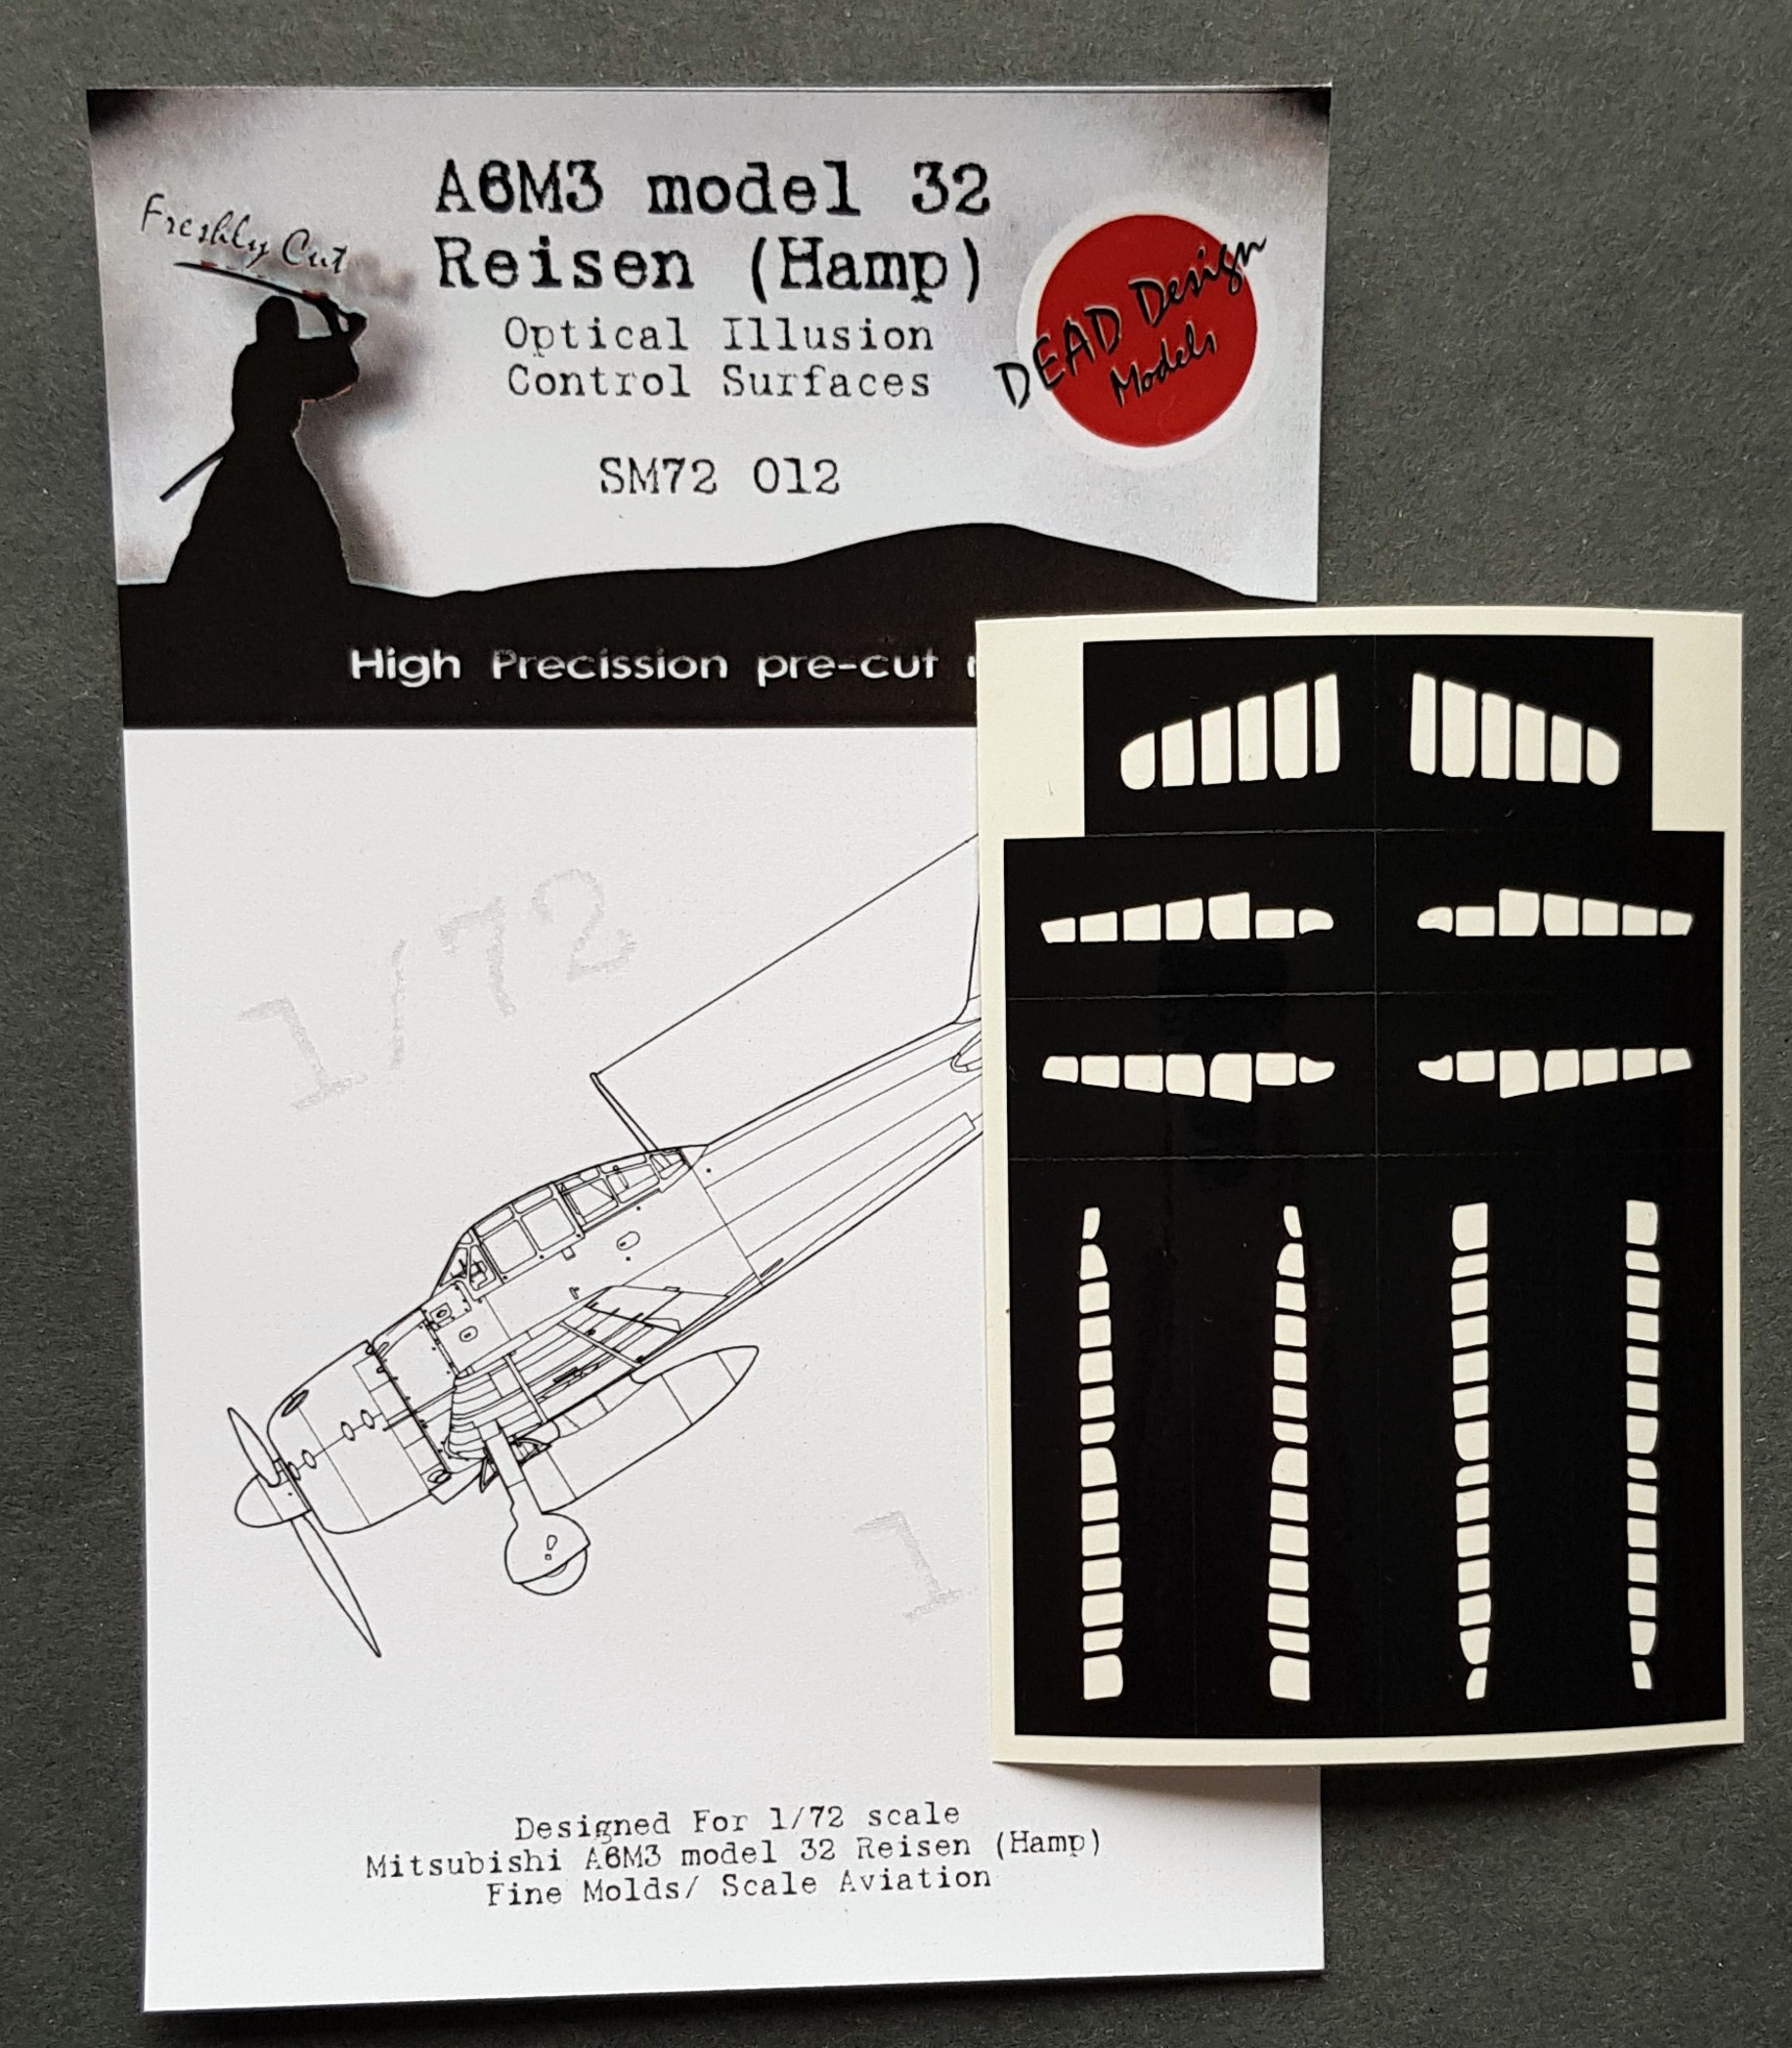  Dead Design Models Surfaces de contrôle Mitsubishi A6M3 m.32 Reisen (